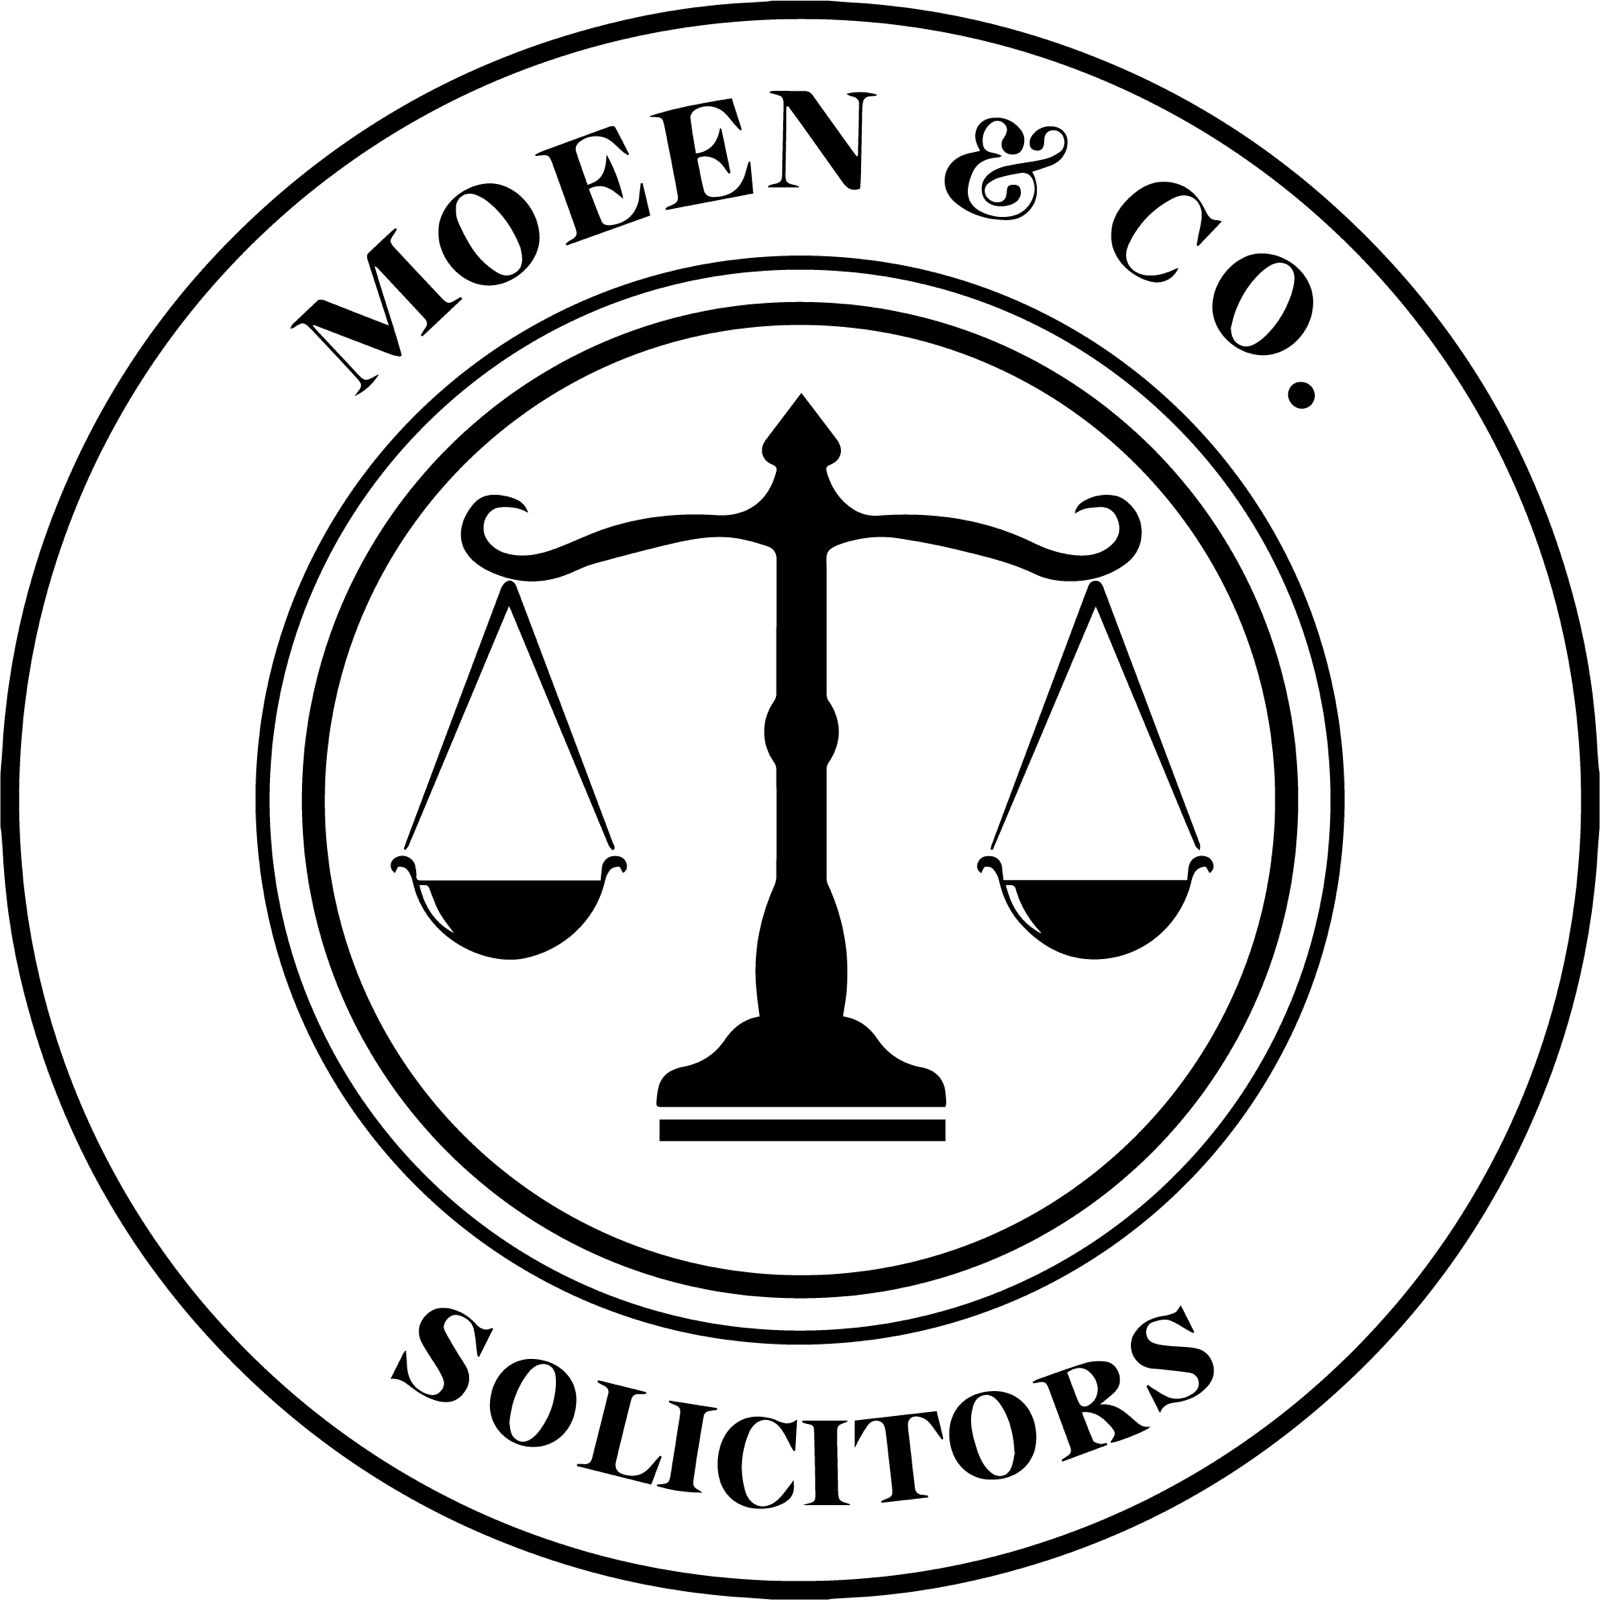 Moeen & Co. Solicitors 